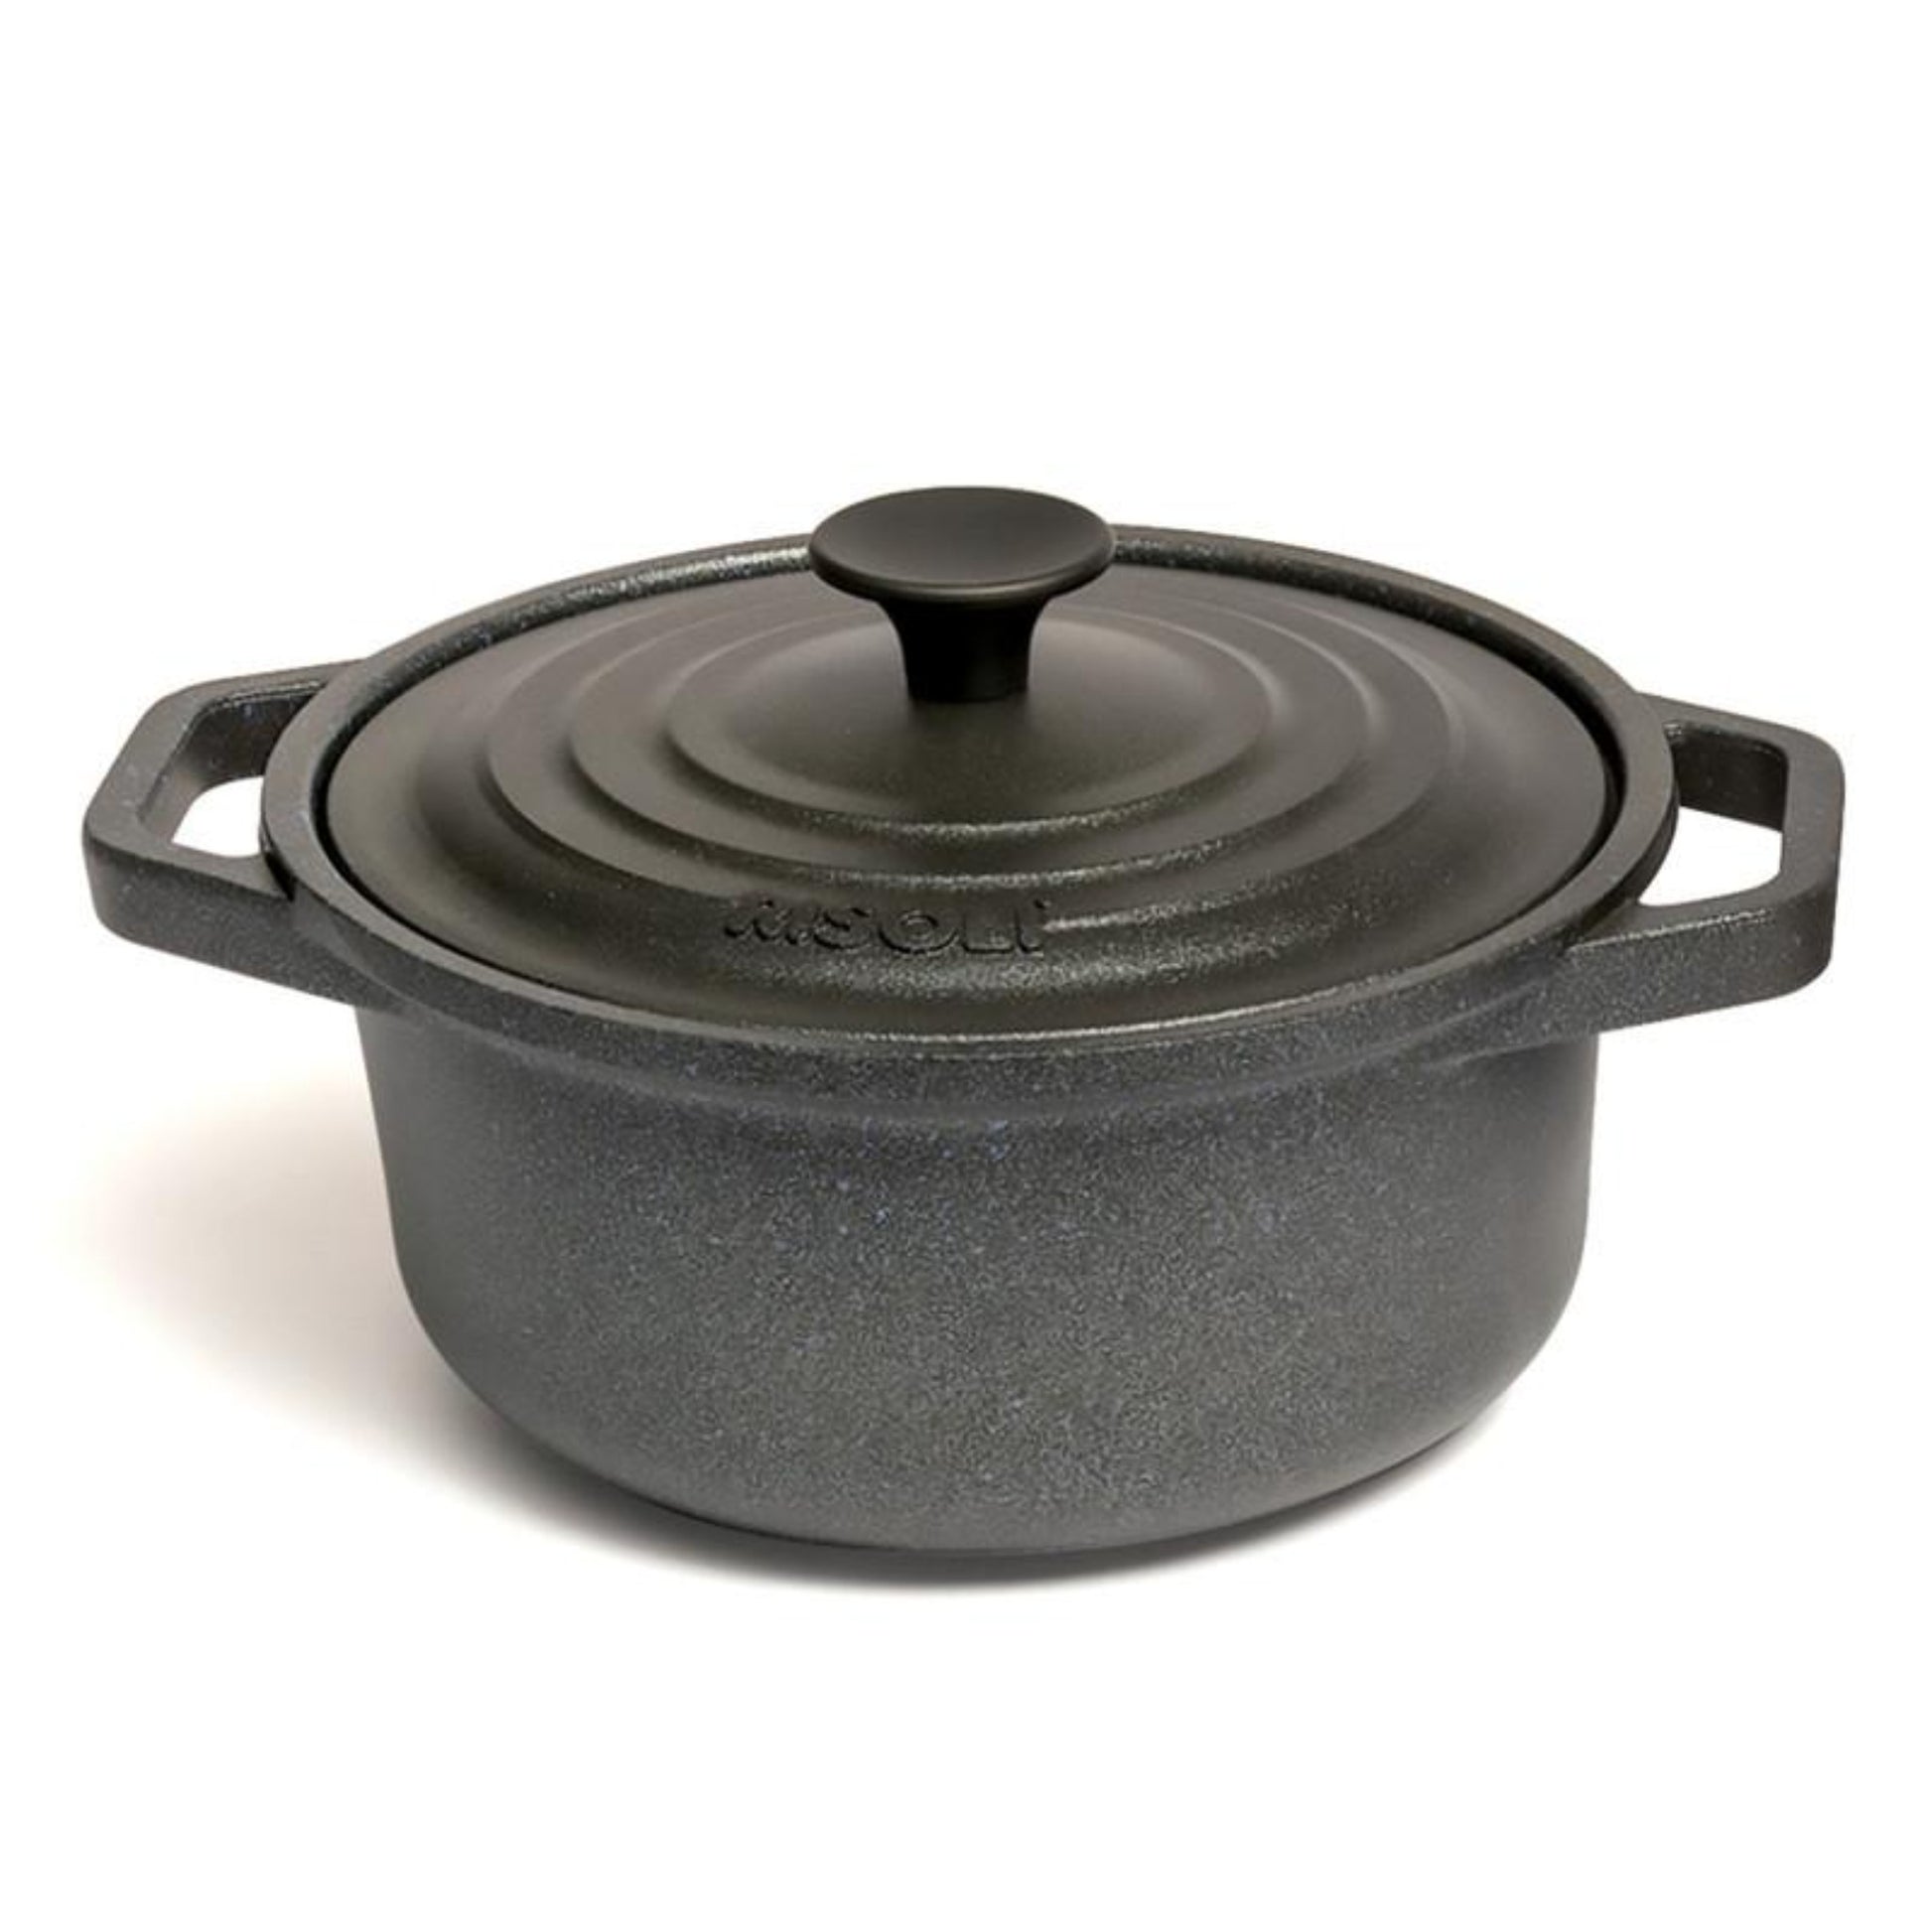 Risoli Granito Pot with Aluminium Cover 20 cm - Black - 44000337